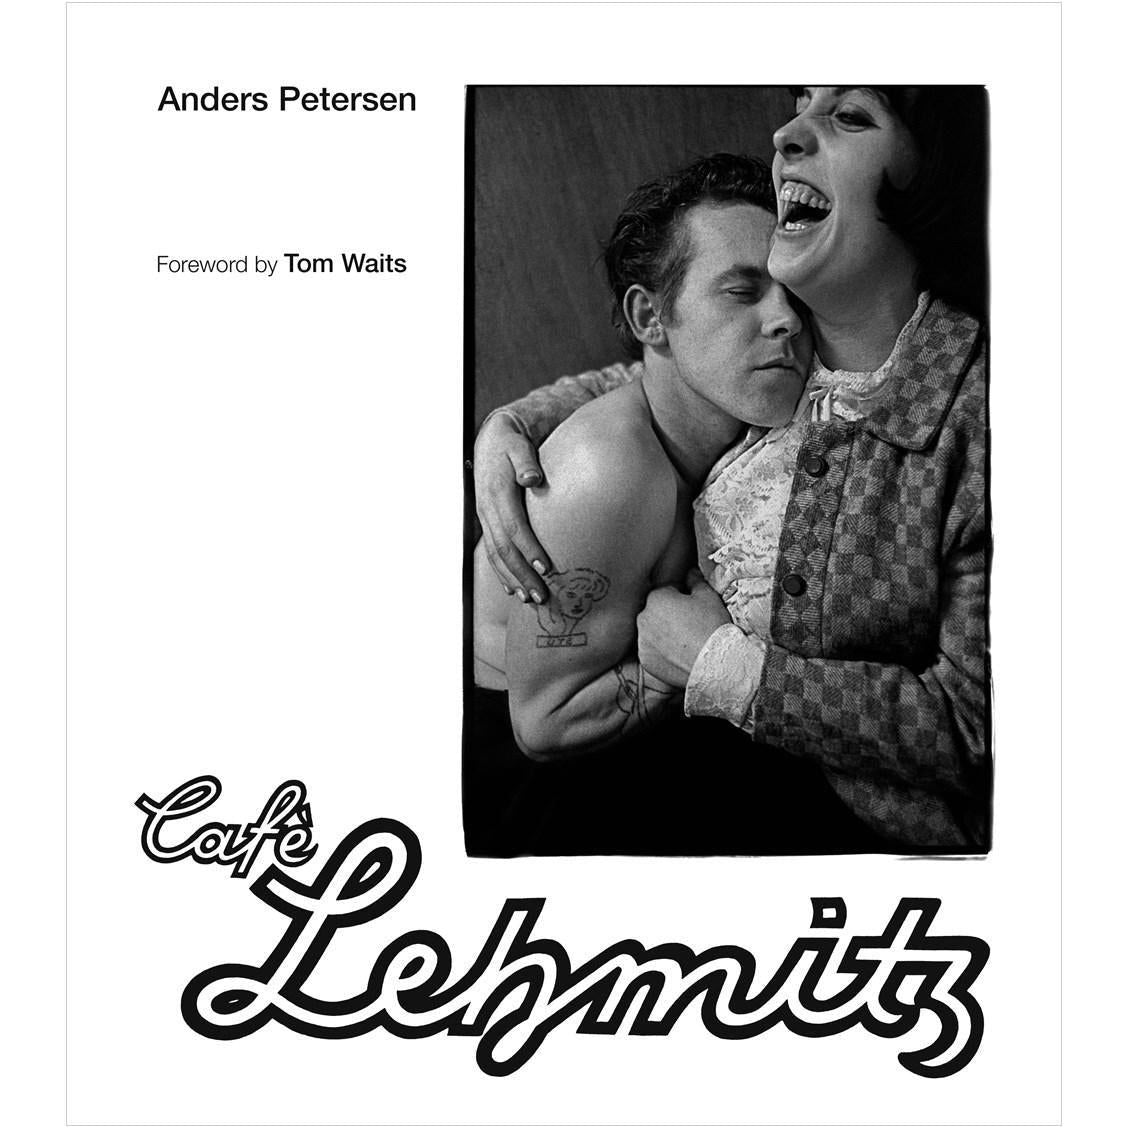 Cafe Lehmitz (Anders Petersen)